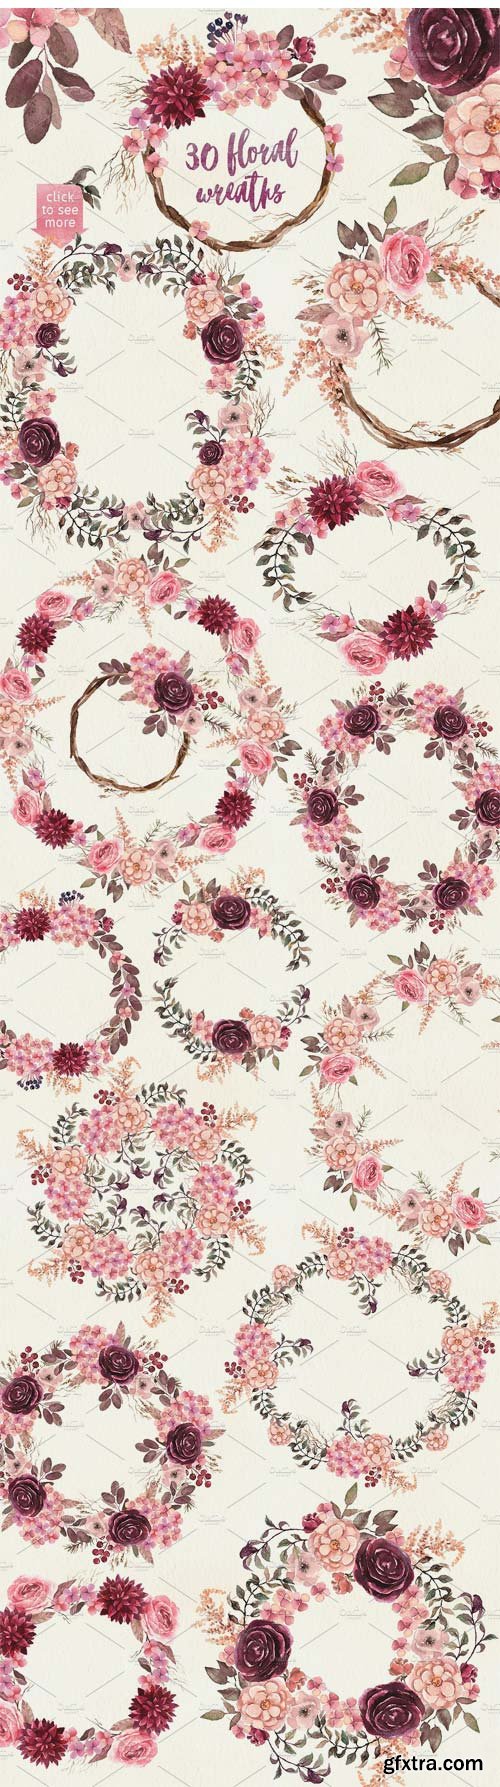 CM 1409085 - Watercolor Floral Pack